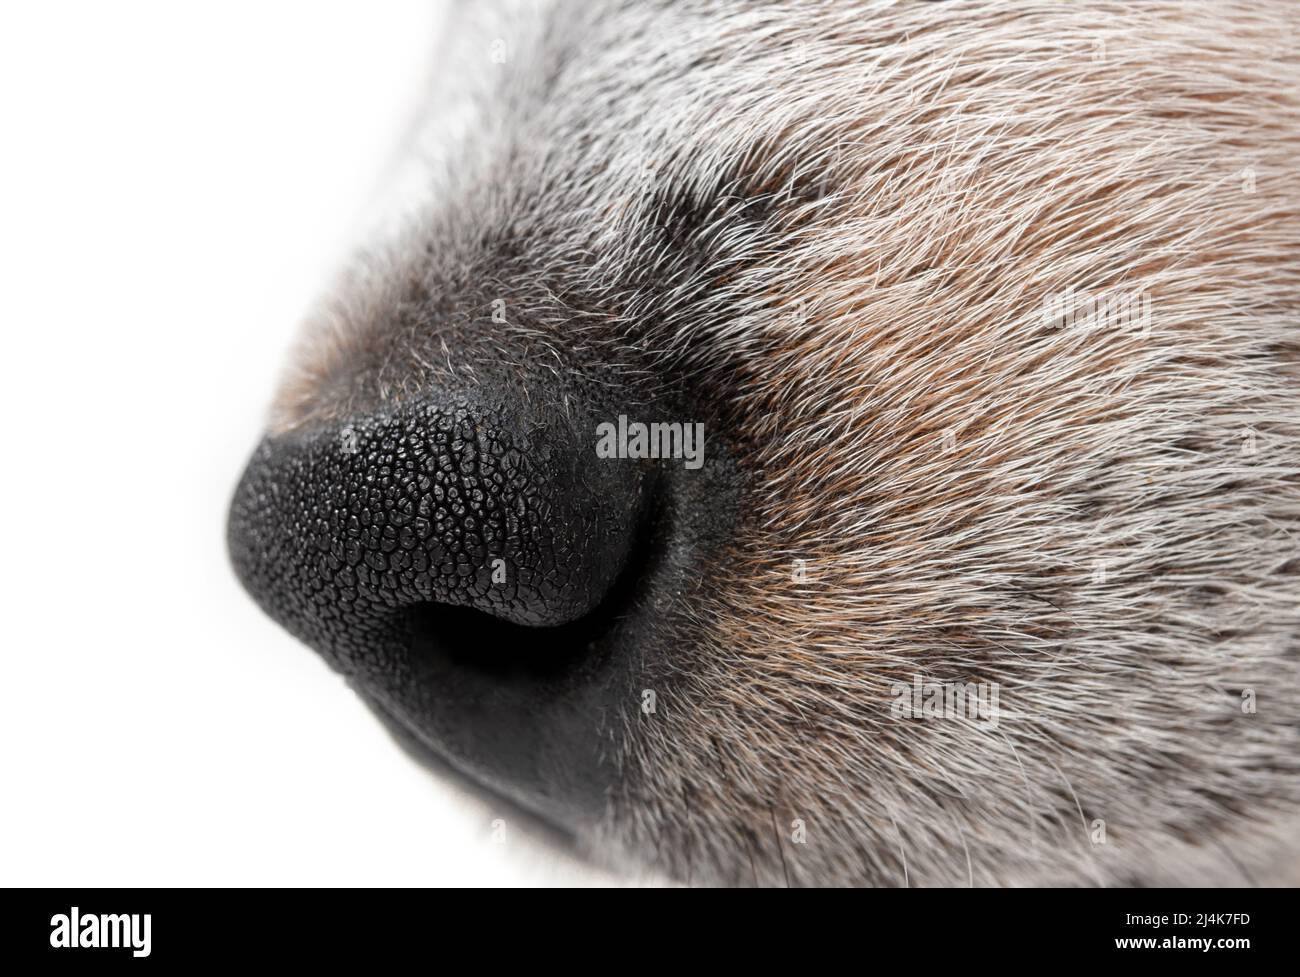 Perfil lateral de la nariz del perro, primer plano. Perfil lateral de perro blanco y negro con nariz negra. cachorro de heeler azul de 9 semanas de edad. Macro de perro de pelo corto Foto de stock